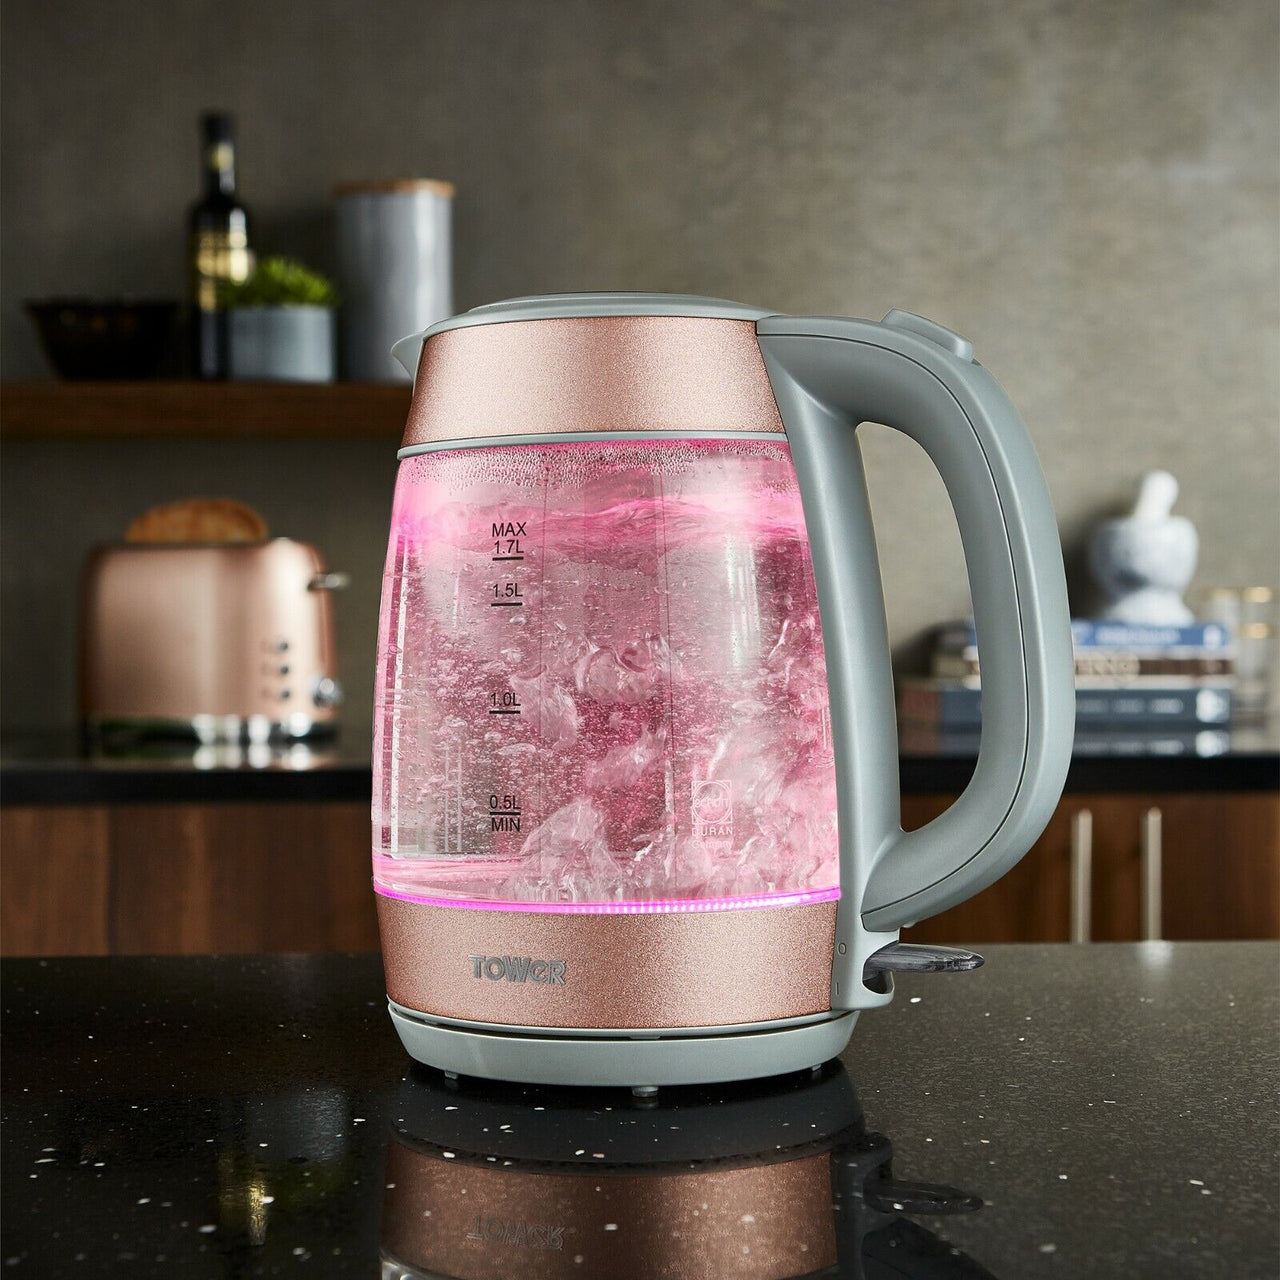 Tower Glitz Glass Kettle & 4 Slice Toaster Set Blush Pink Illuminating LED Light